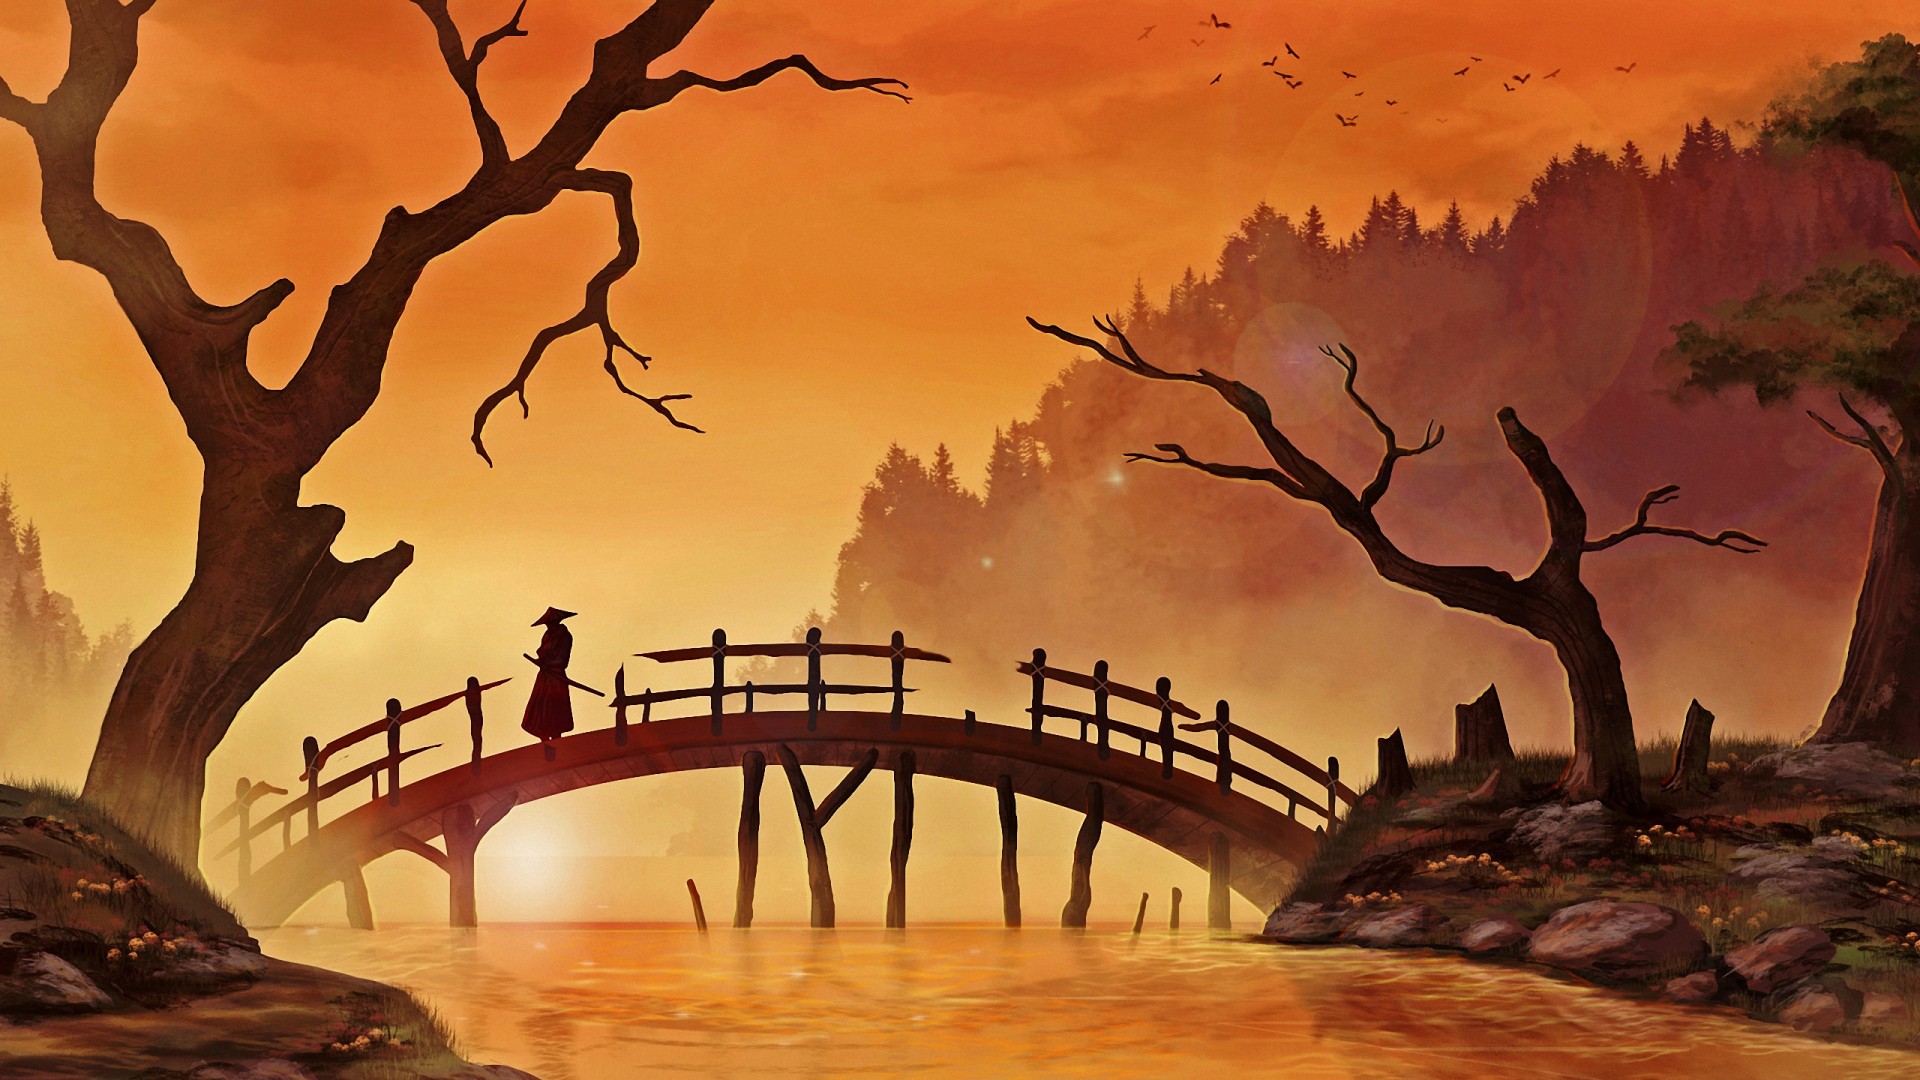 fantasy art, Sunset, River, Samurai, Dead trees, Bridge, Birds, Forest Wallpaper